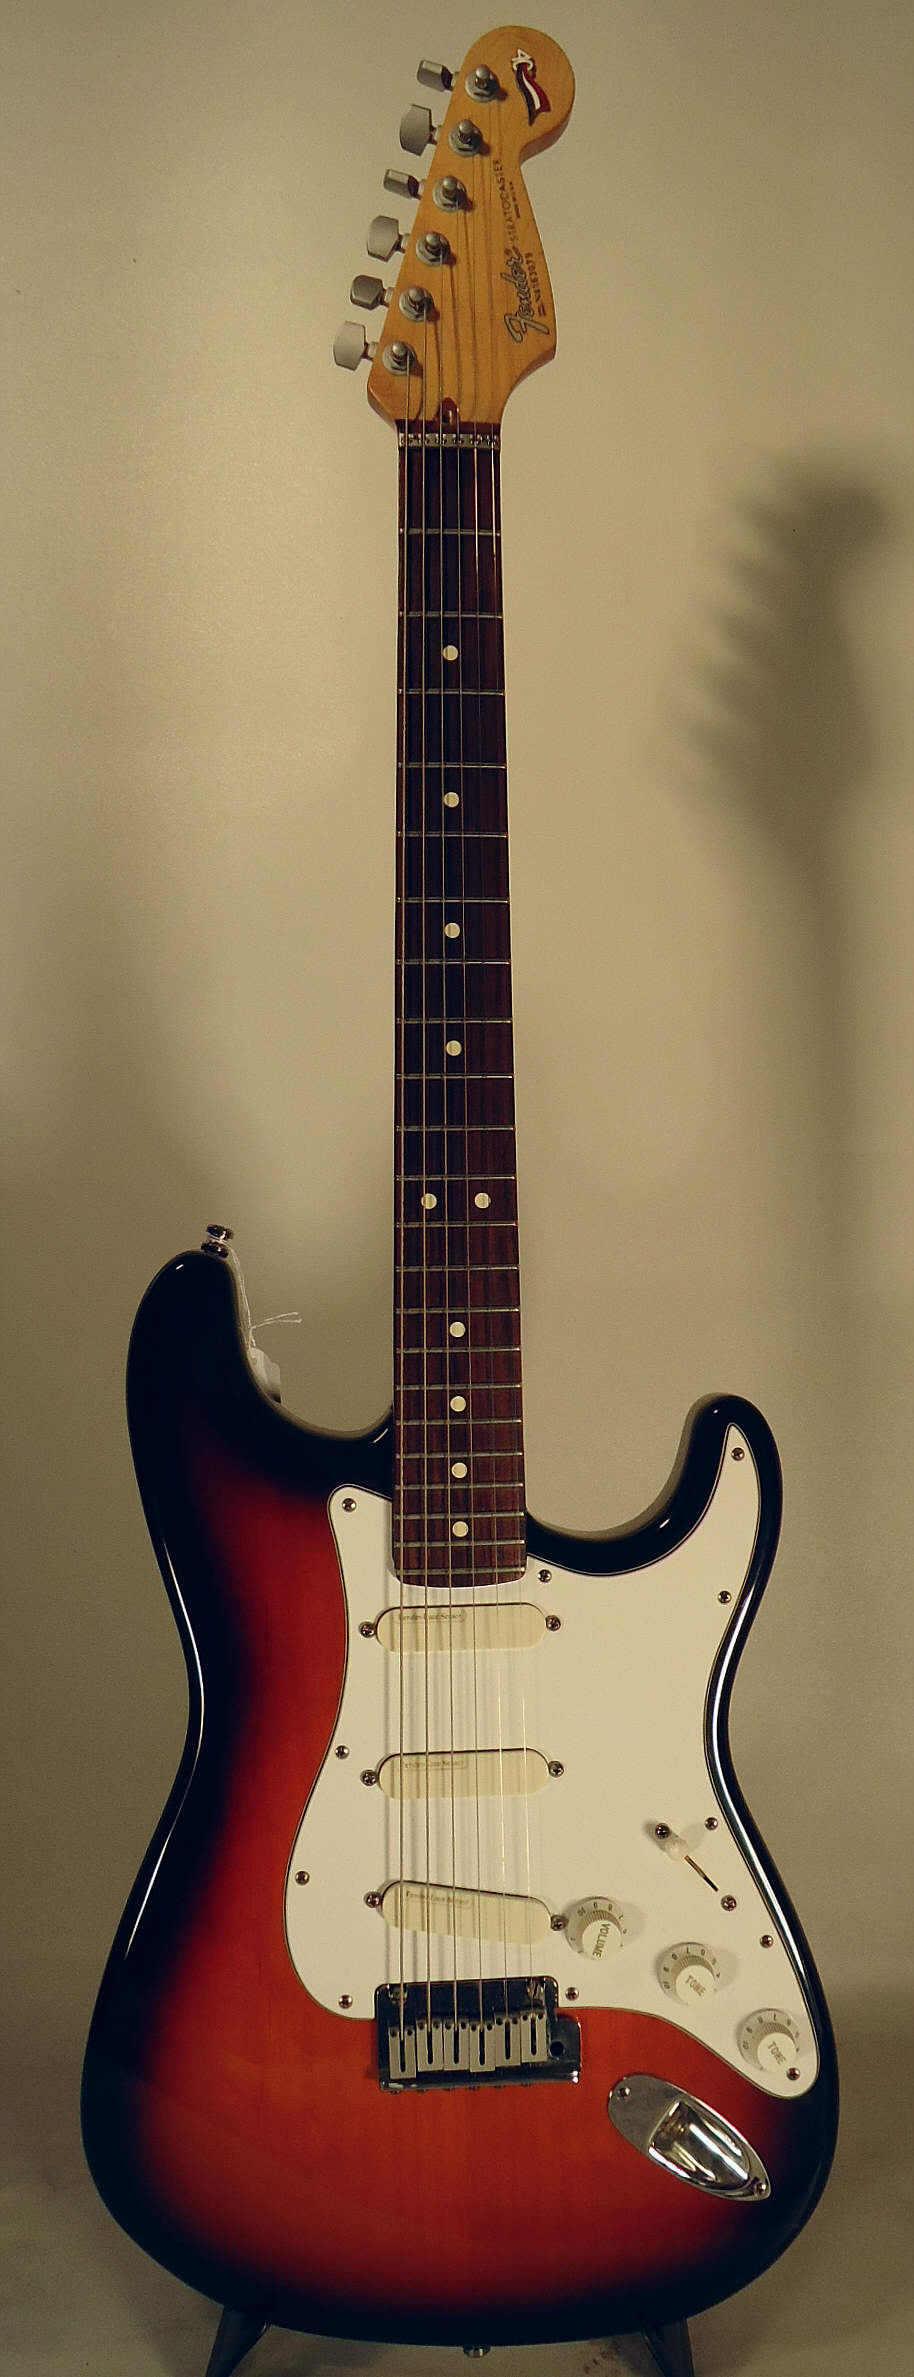 Fender Stratocaster Plus 1994 a.jpg